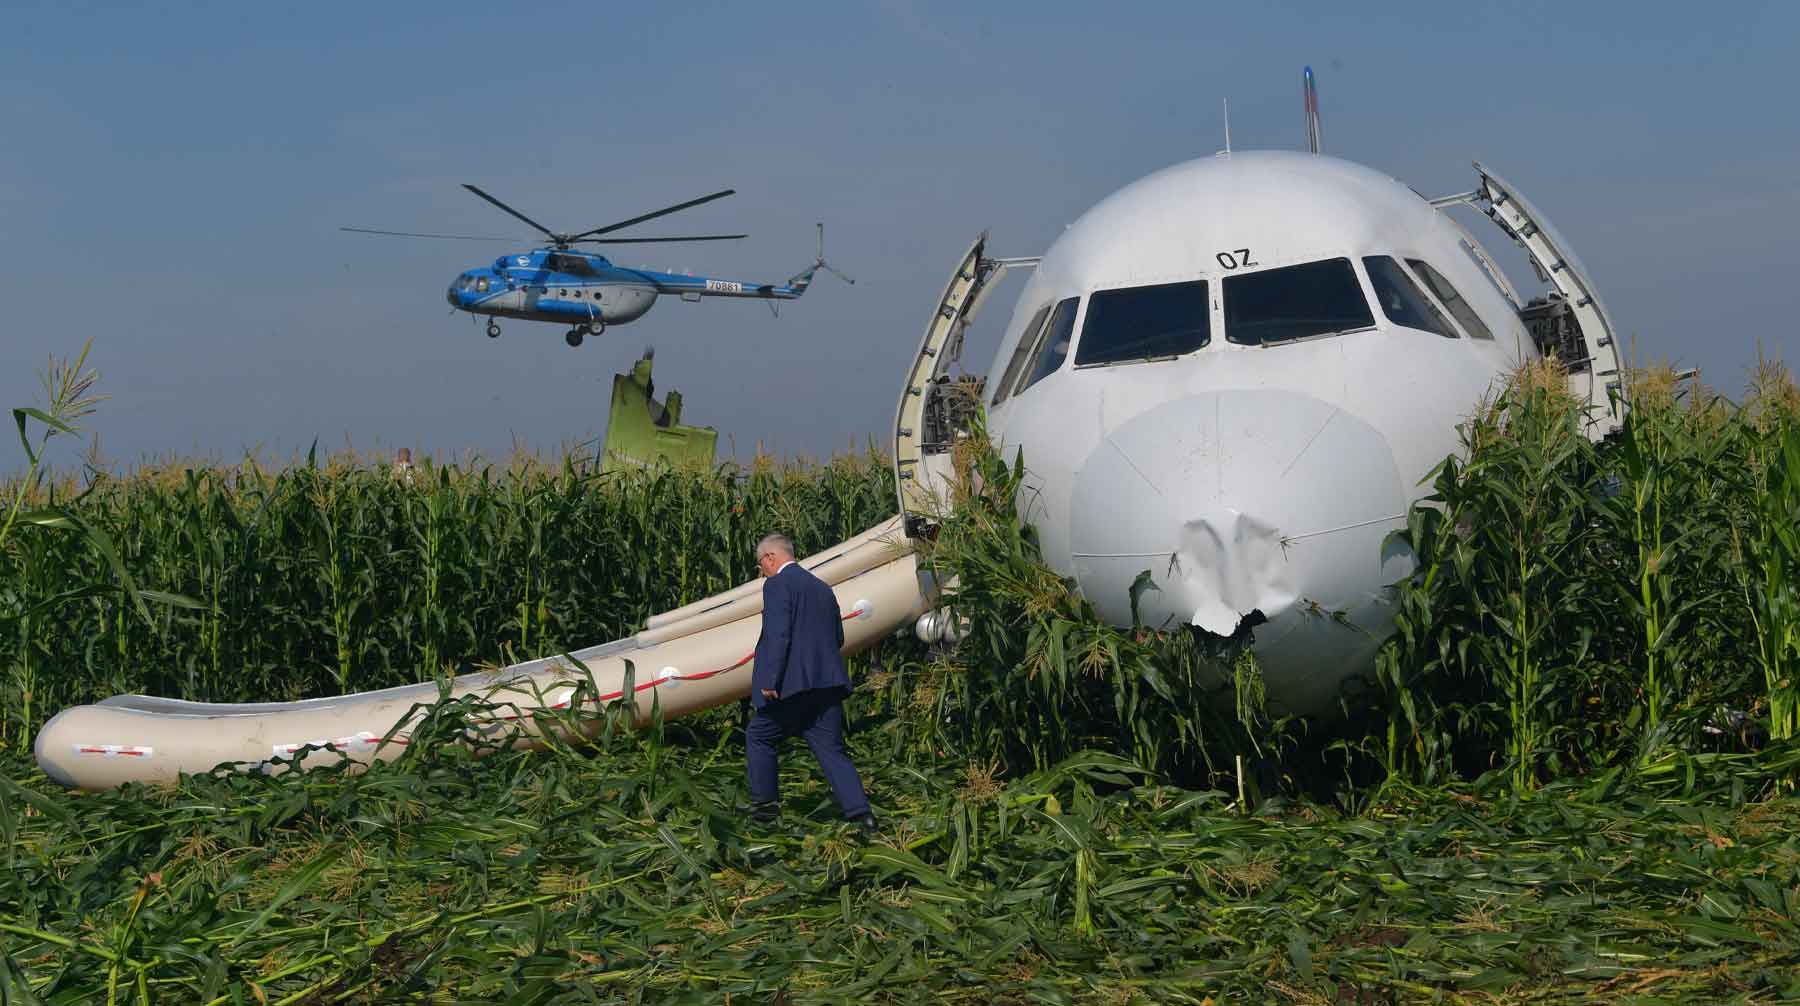 Ранее в Росприроднадзоре подтвердили наличие несанкционированной свалки в Подмосковье неподалеку от аварийной посадки A321 Фото: © GLOBAL LOOK press / Komsomolskaya Pravda